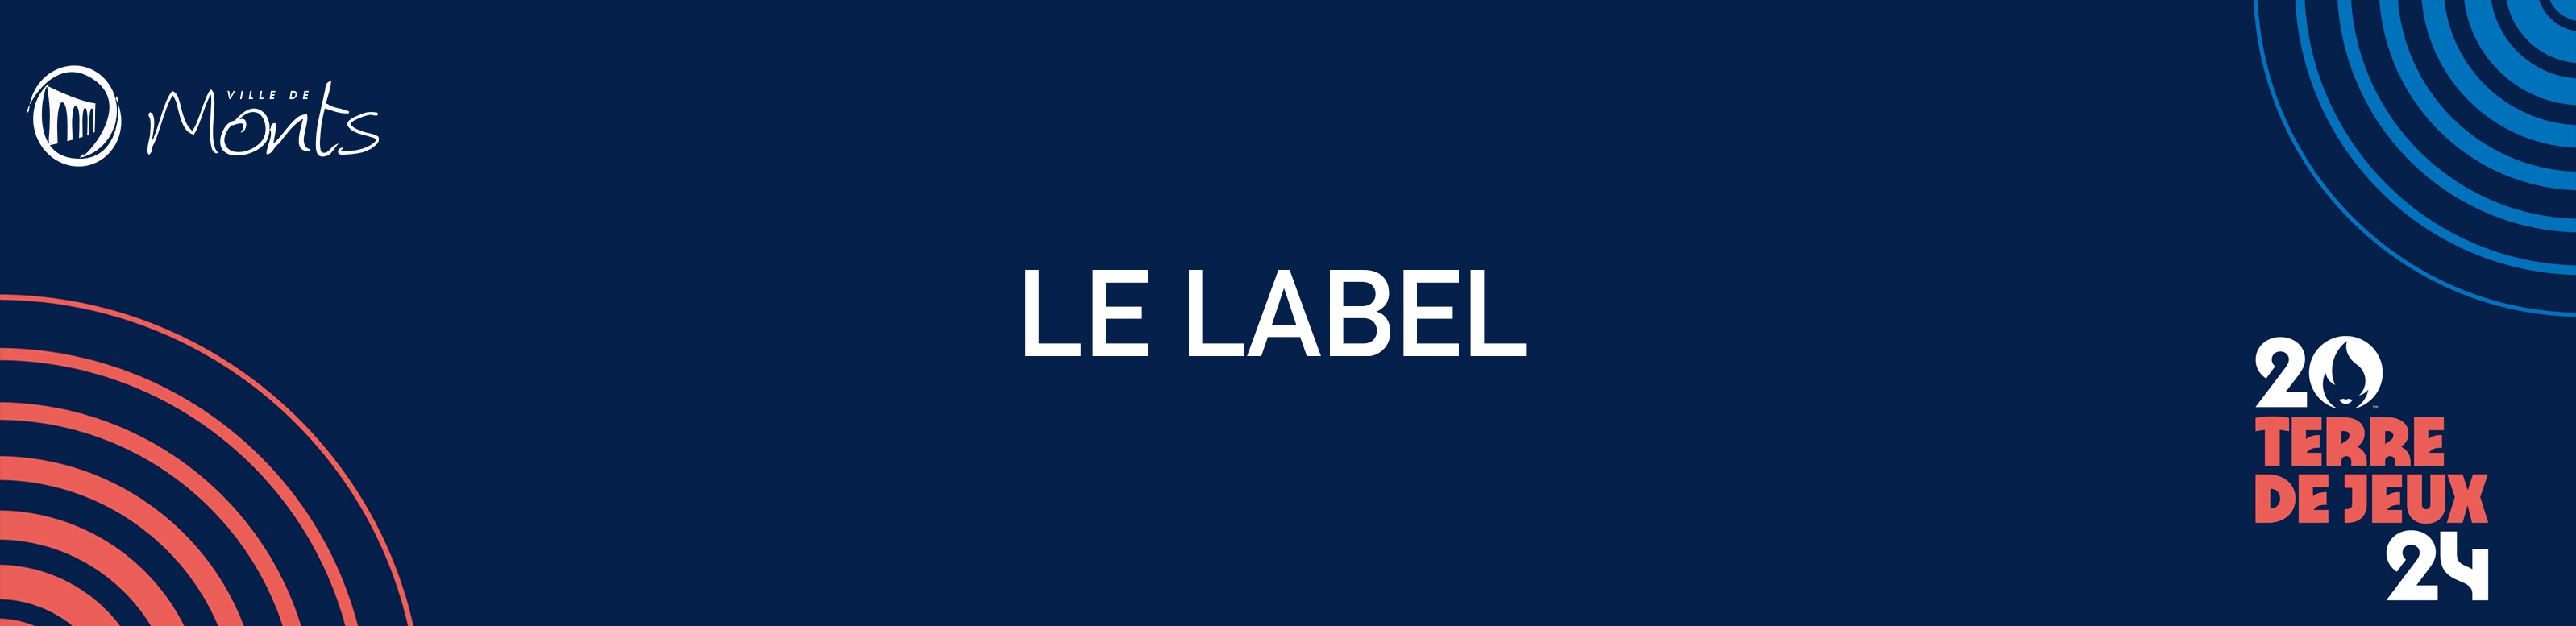 Bannière_label.jpg